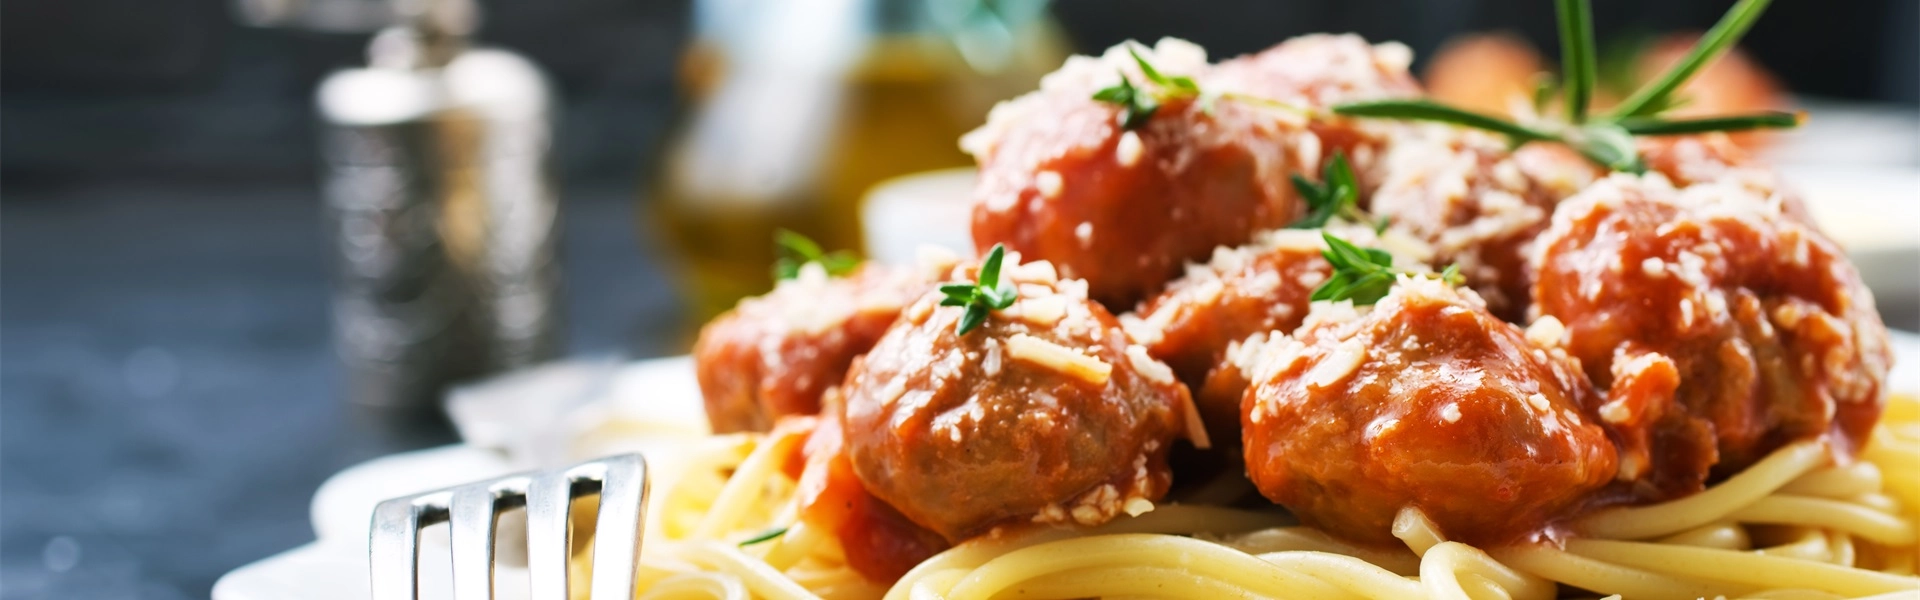 Recipe: Meatballs with spaghetti